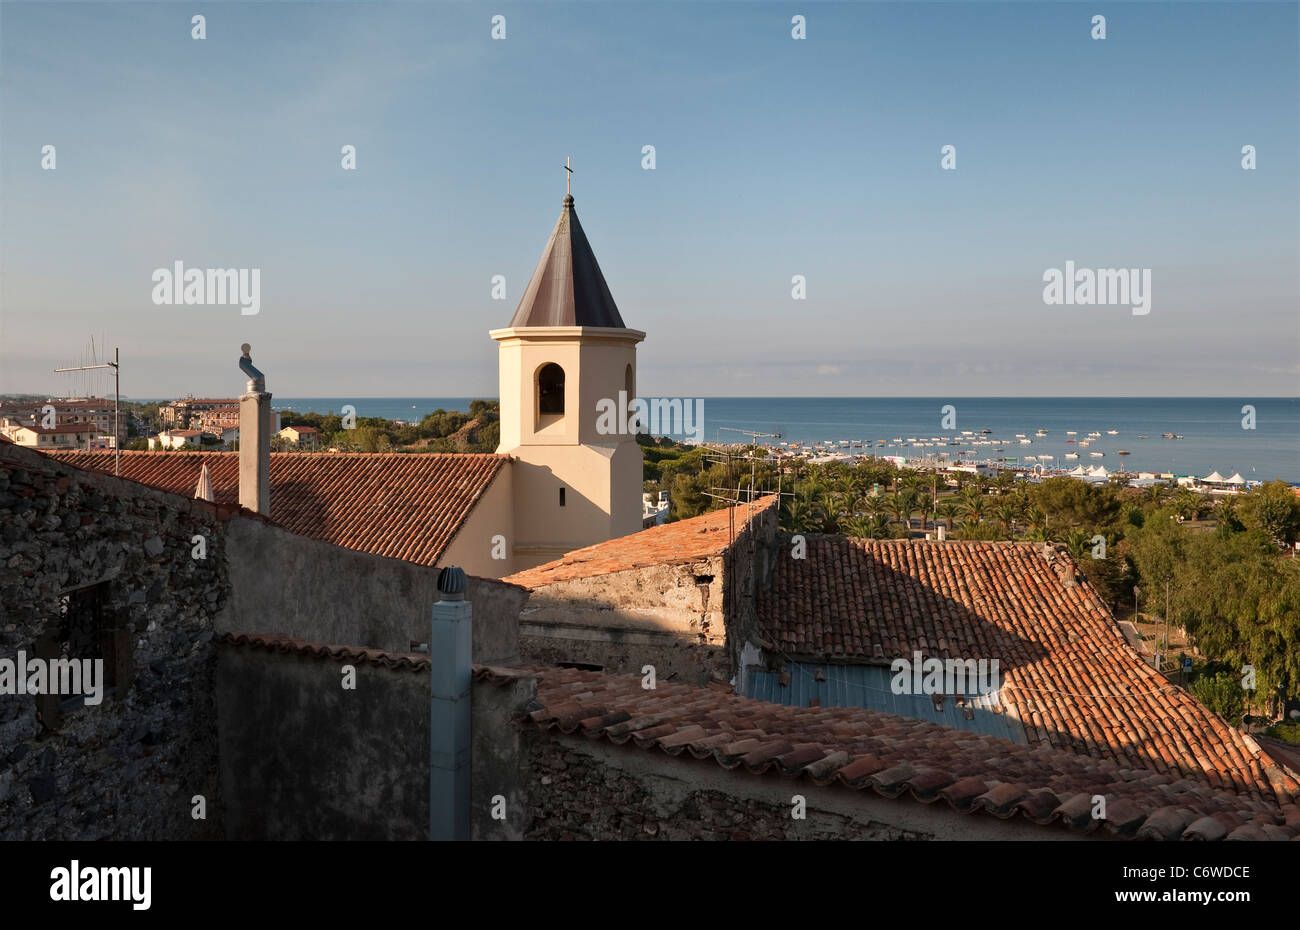 La vista sui tetti in tegole del centro storico di Scalea, Calabria, Italia, verso il mare Foto Stock